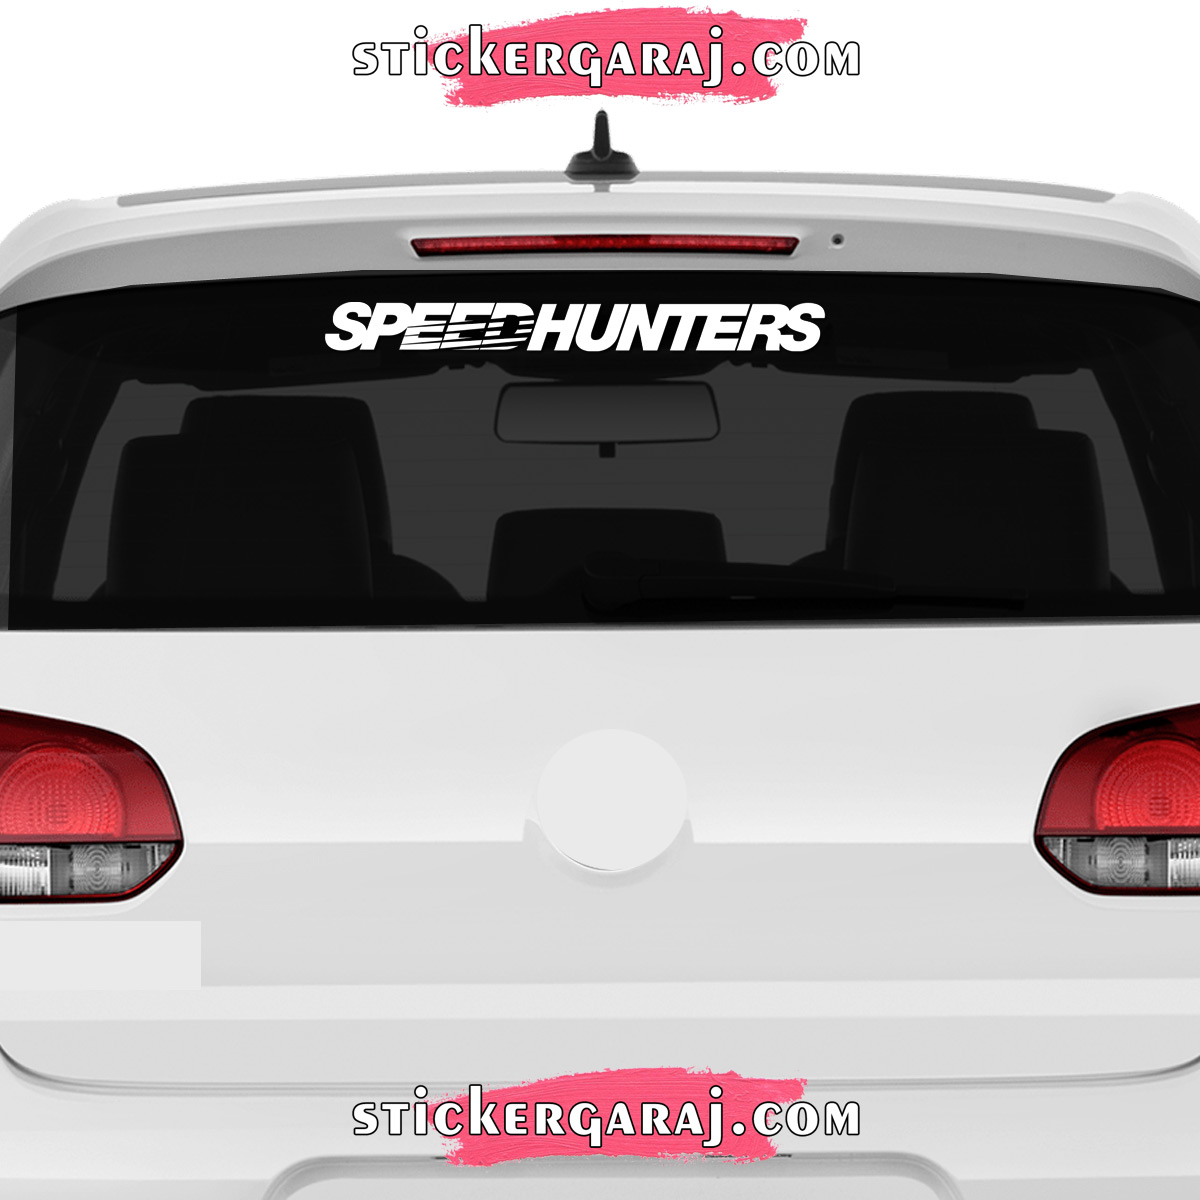 Mazda cam sticker - Mazda cam sticker - speedhunters